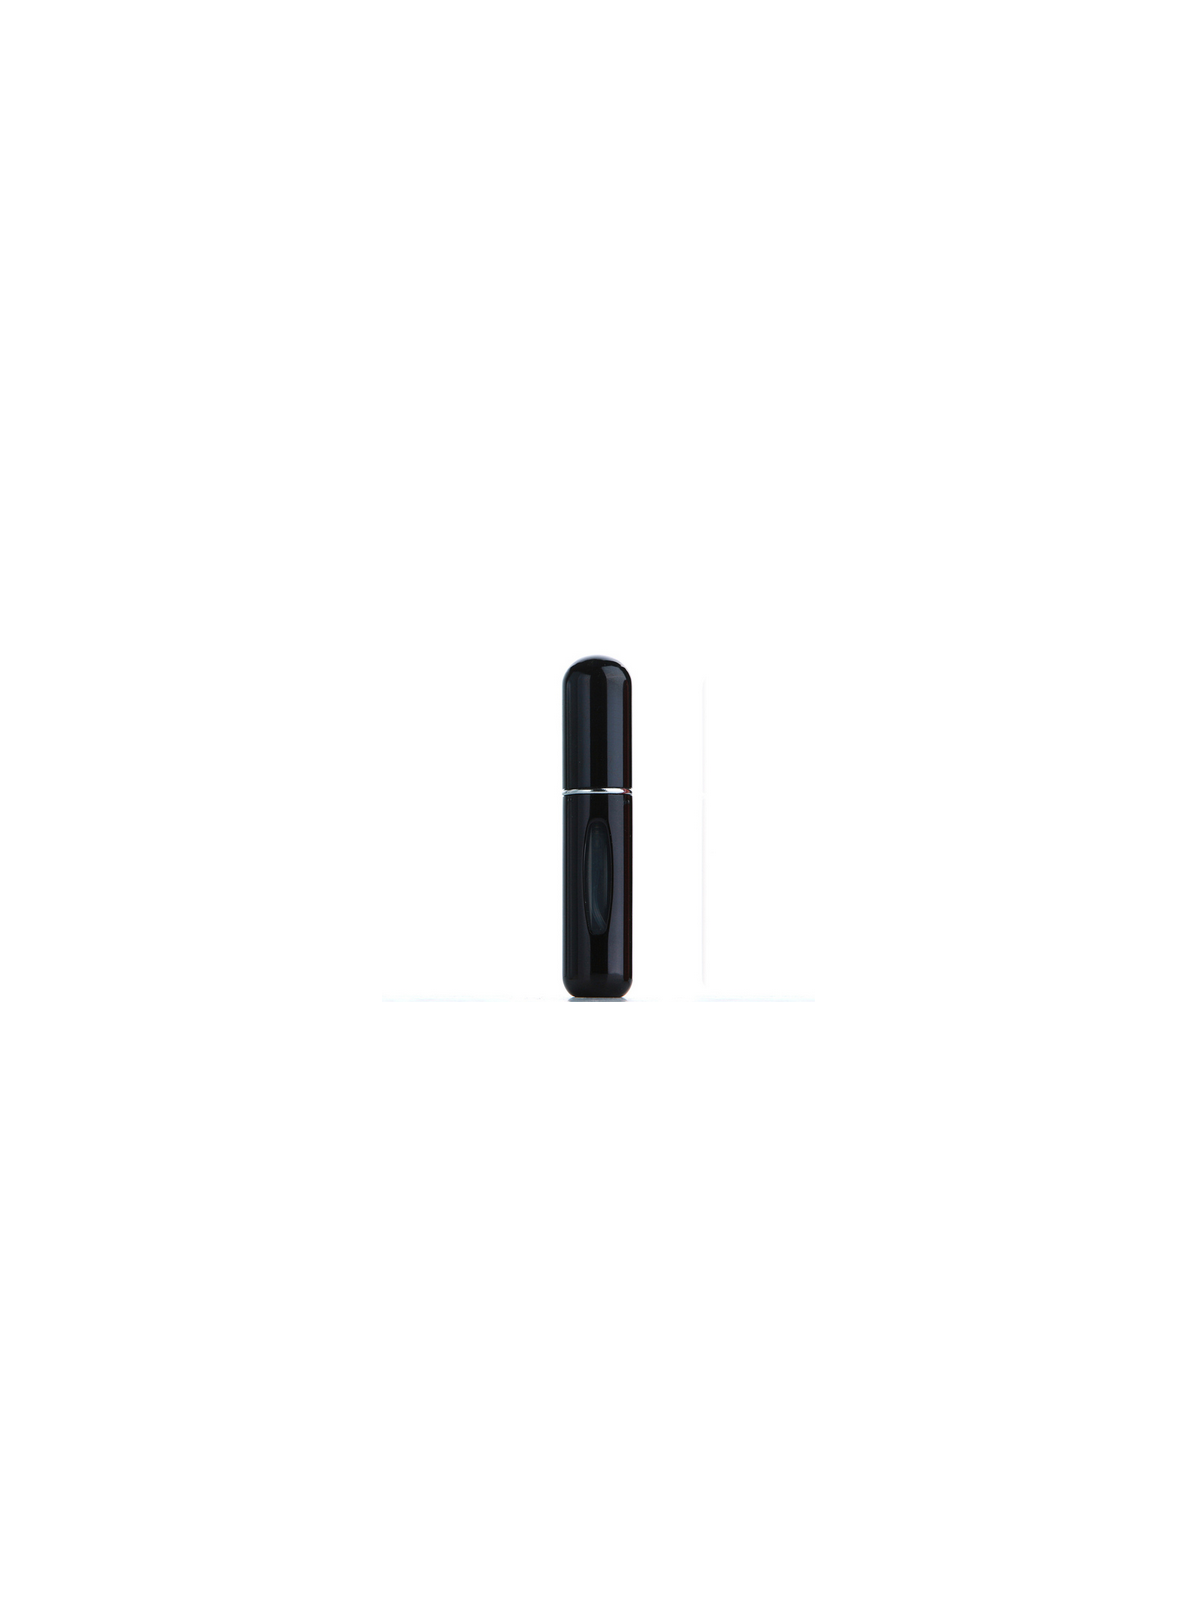 Flacon de poche 5ml noir